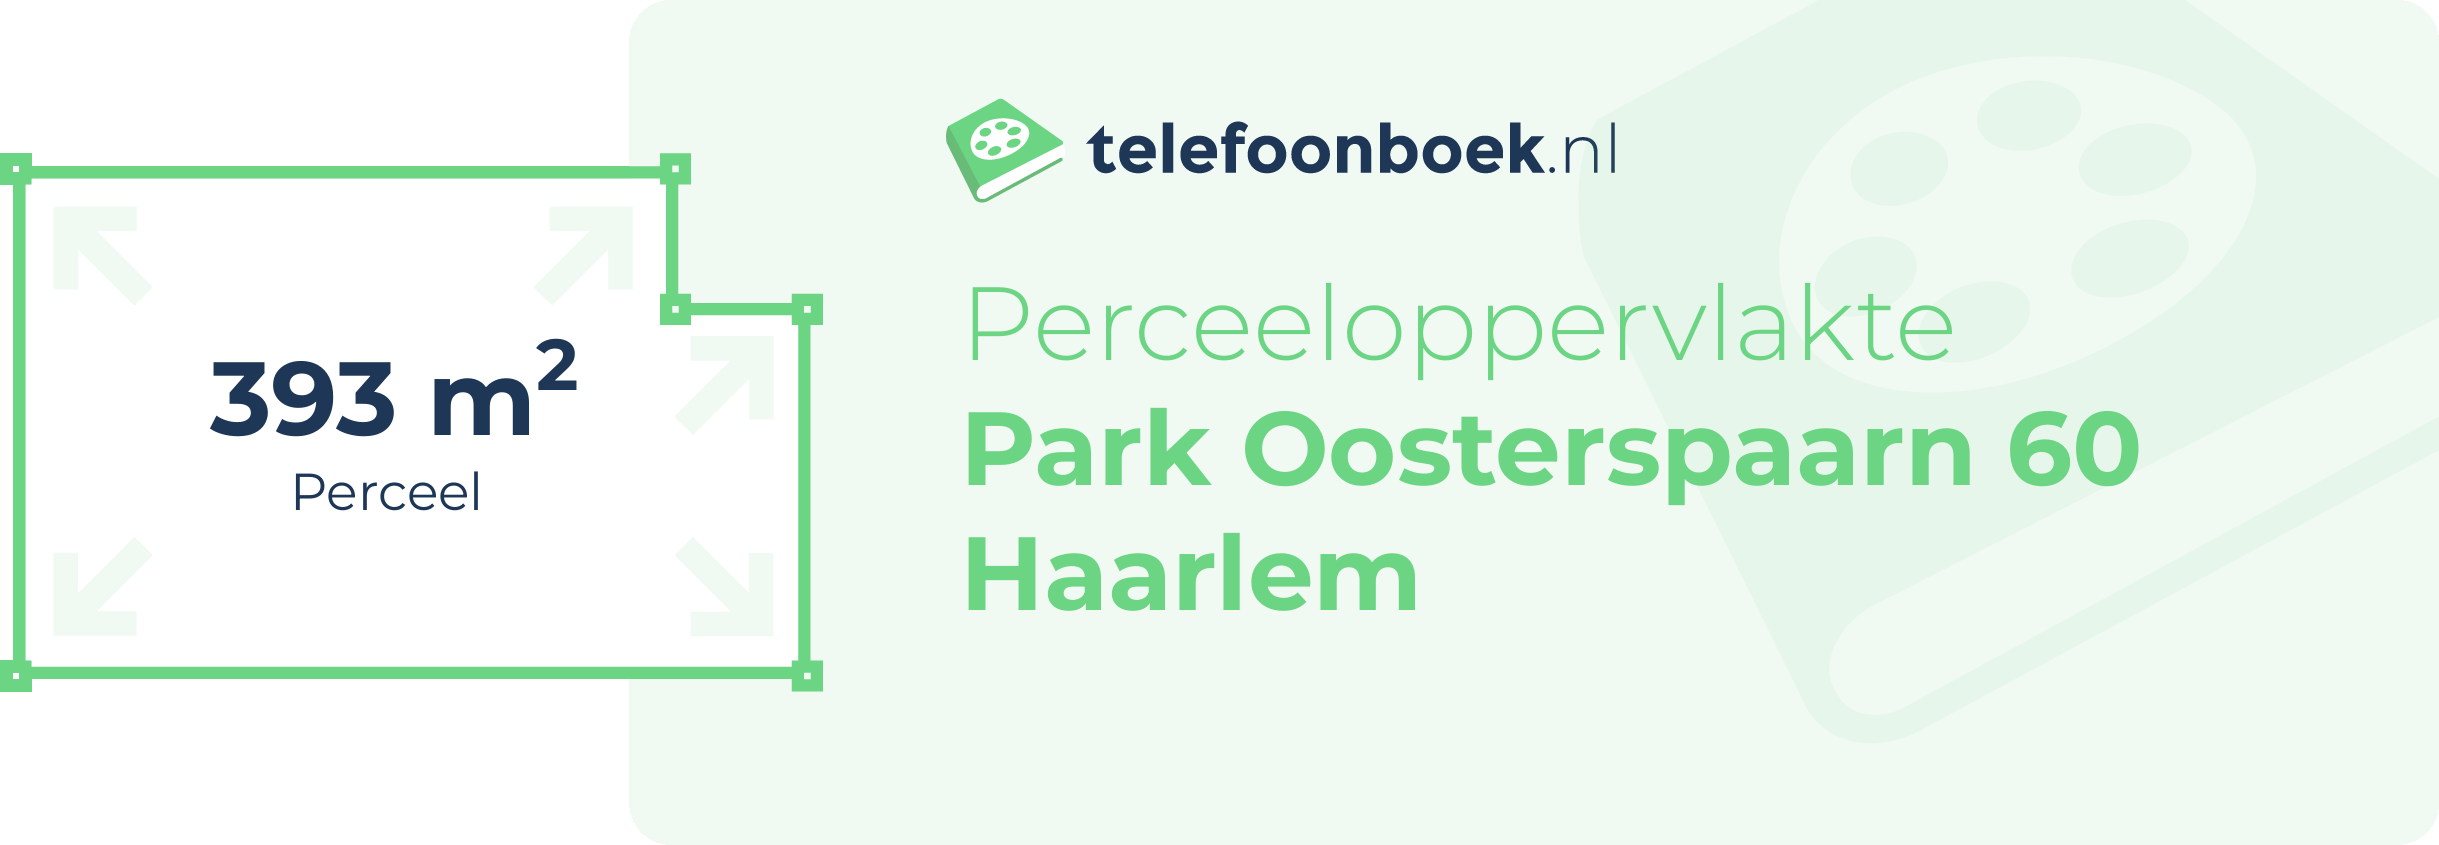 Perceeloppervlakte Park Oosterspaarn 60 Haarlem